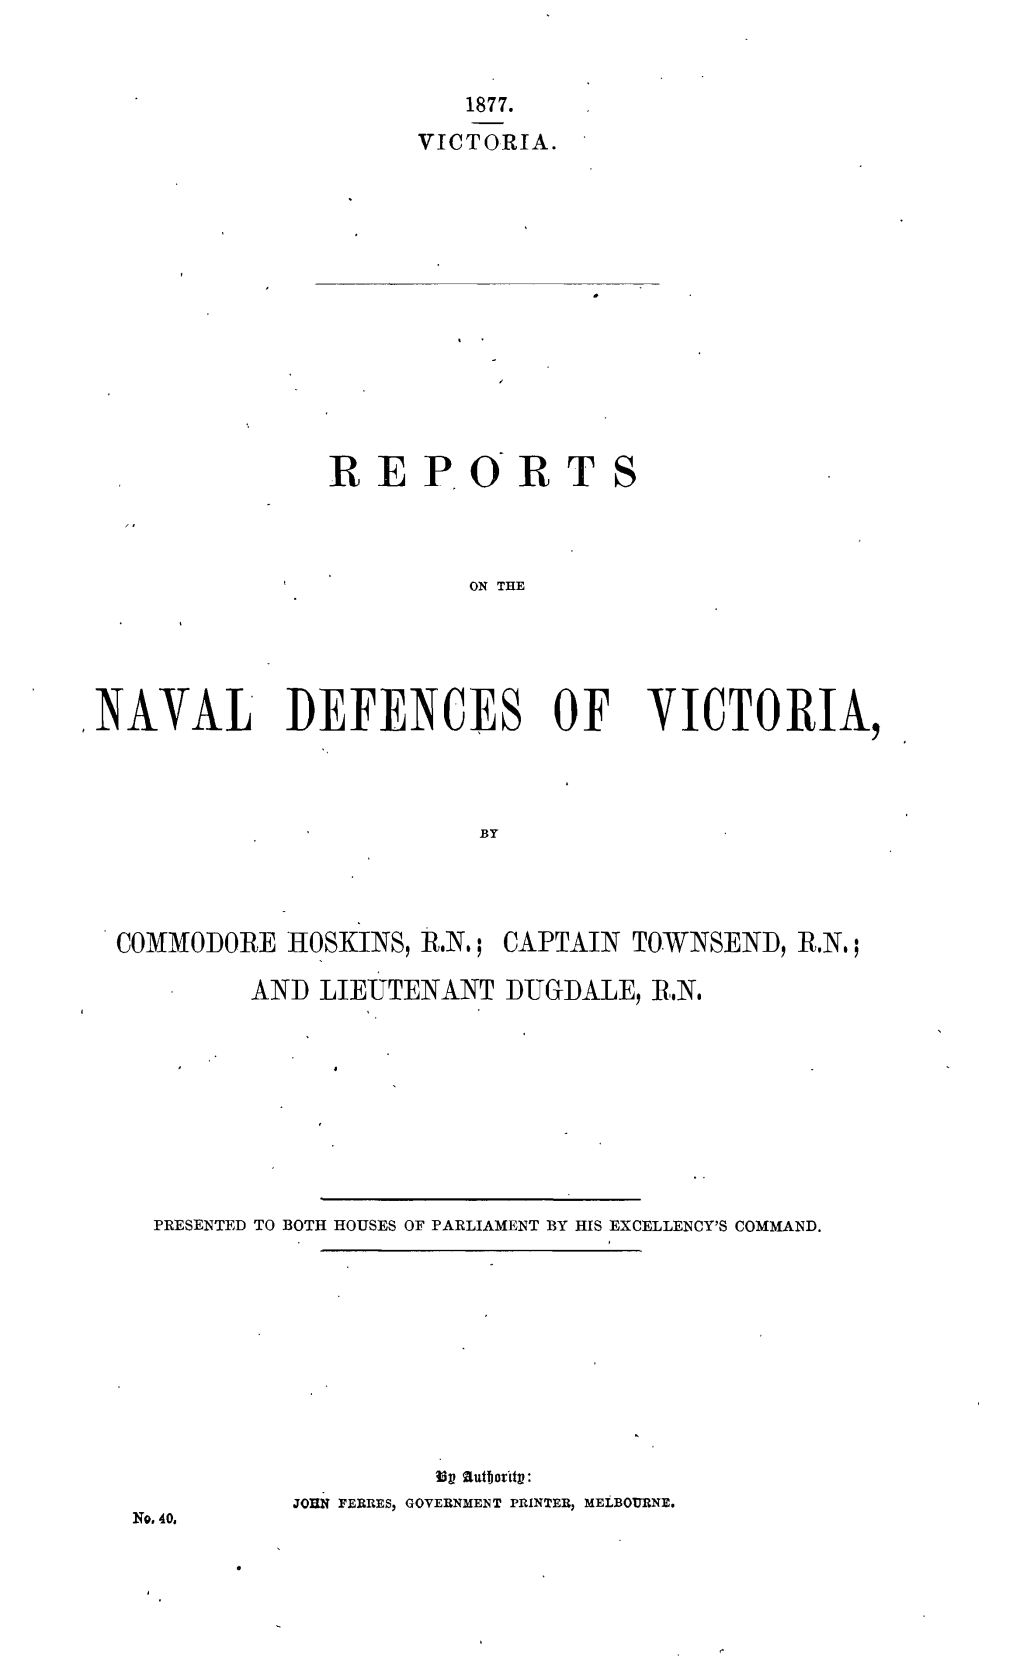 Naval' Defences of Victoria